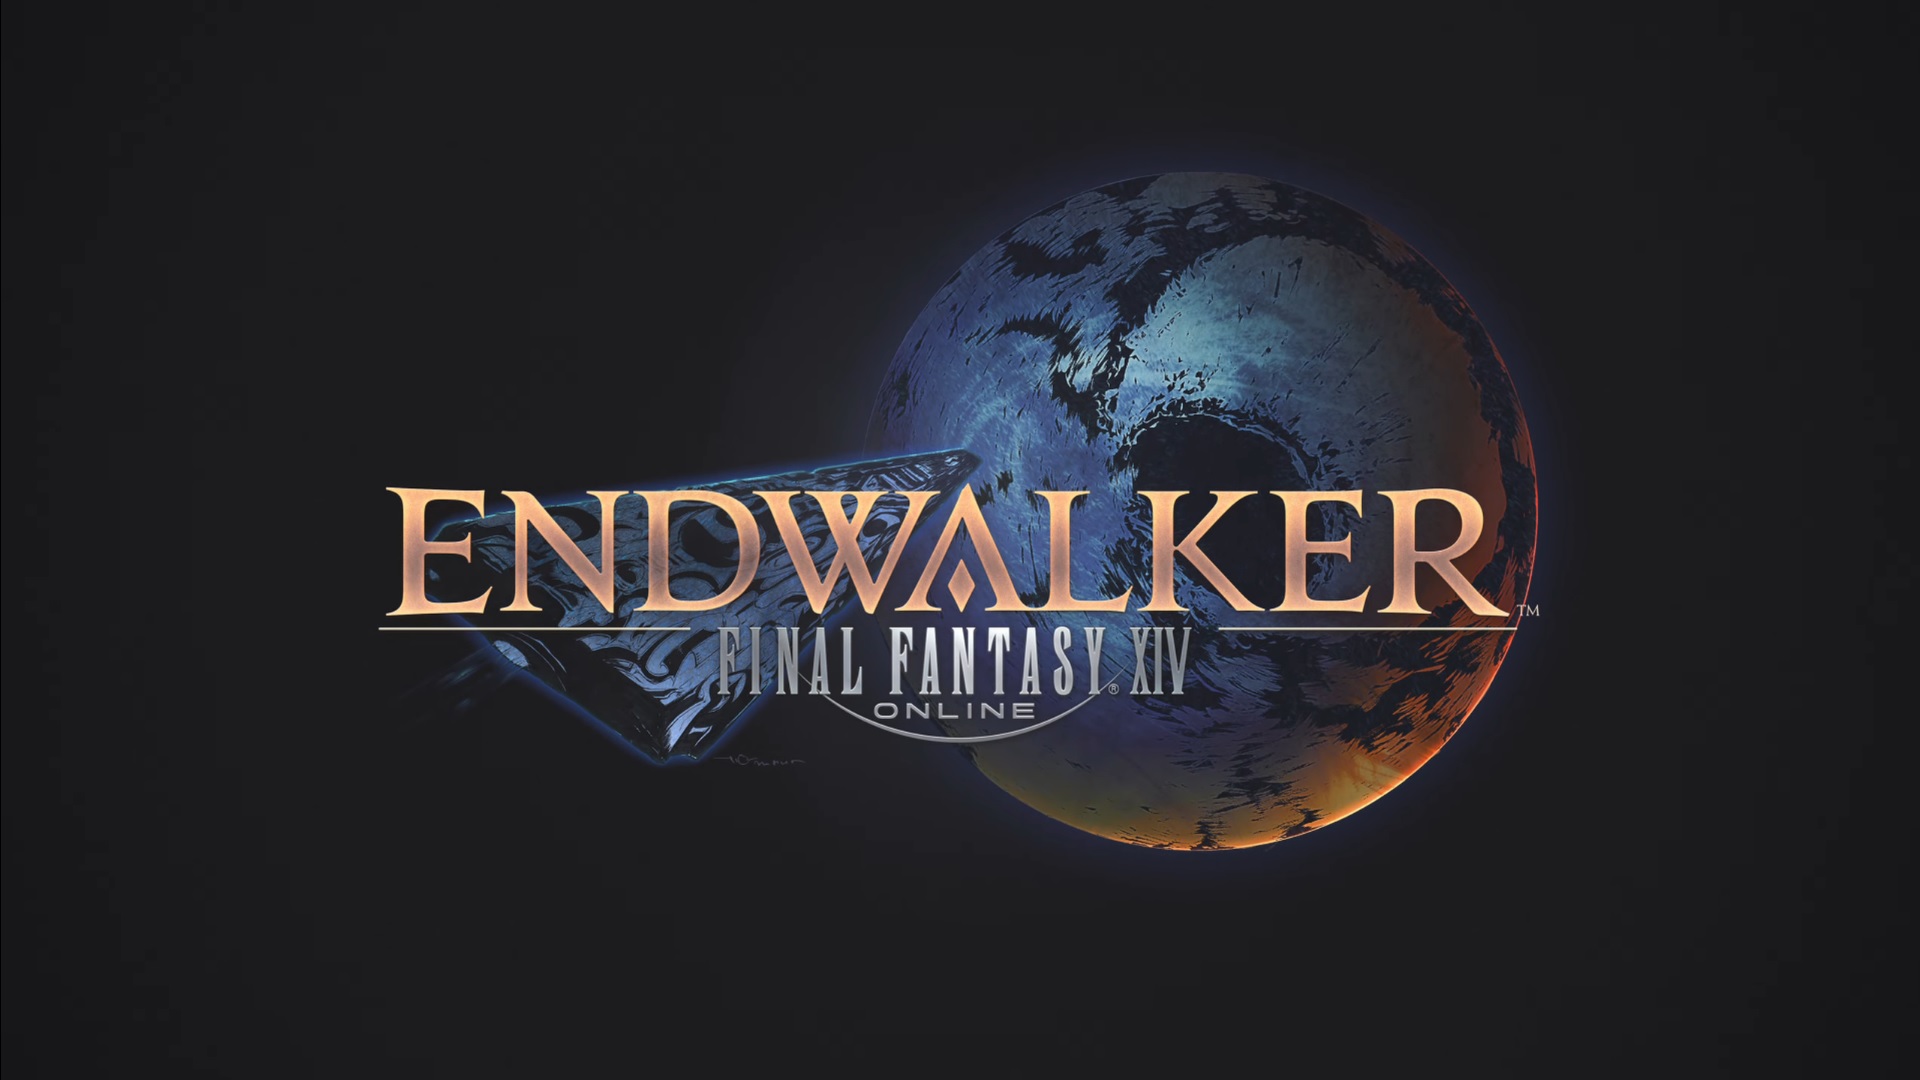 Final Fantasy XIV annonce son extension Endwalker et sa venue sur PS5